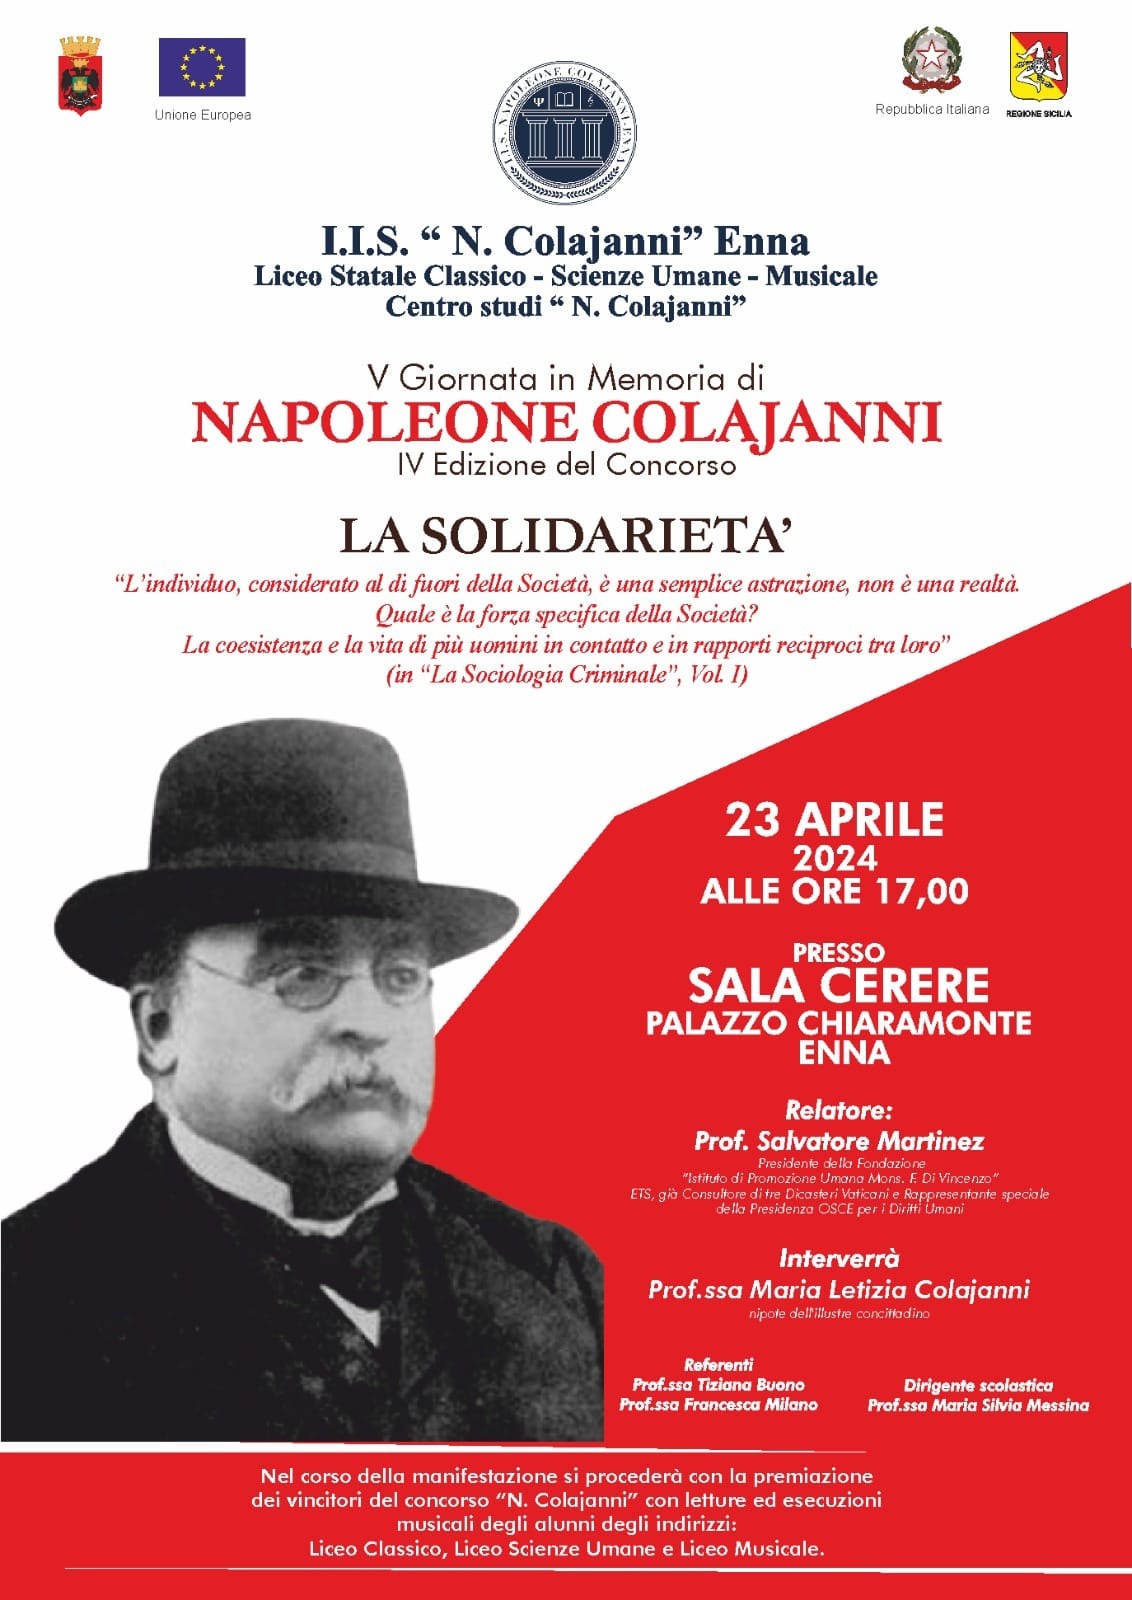 V giornata in memoria di Napoleone Colajanni